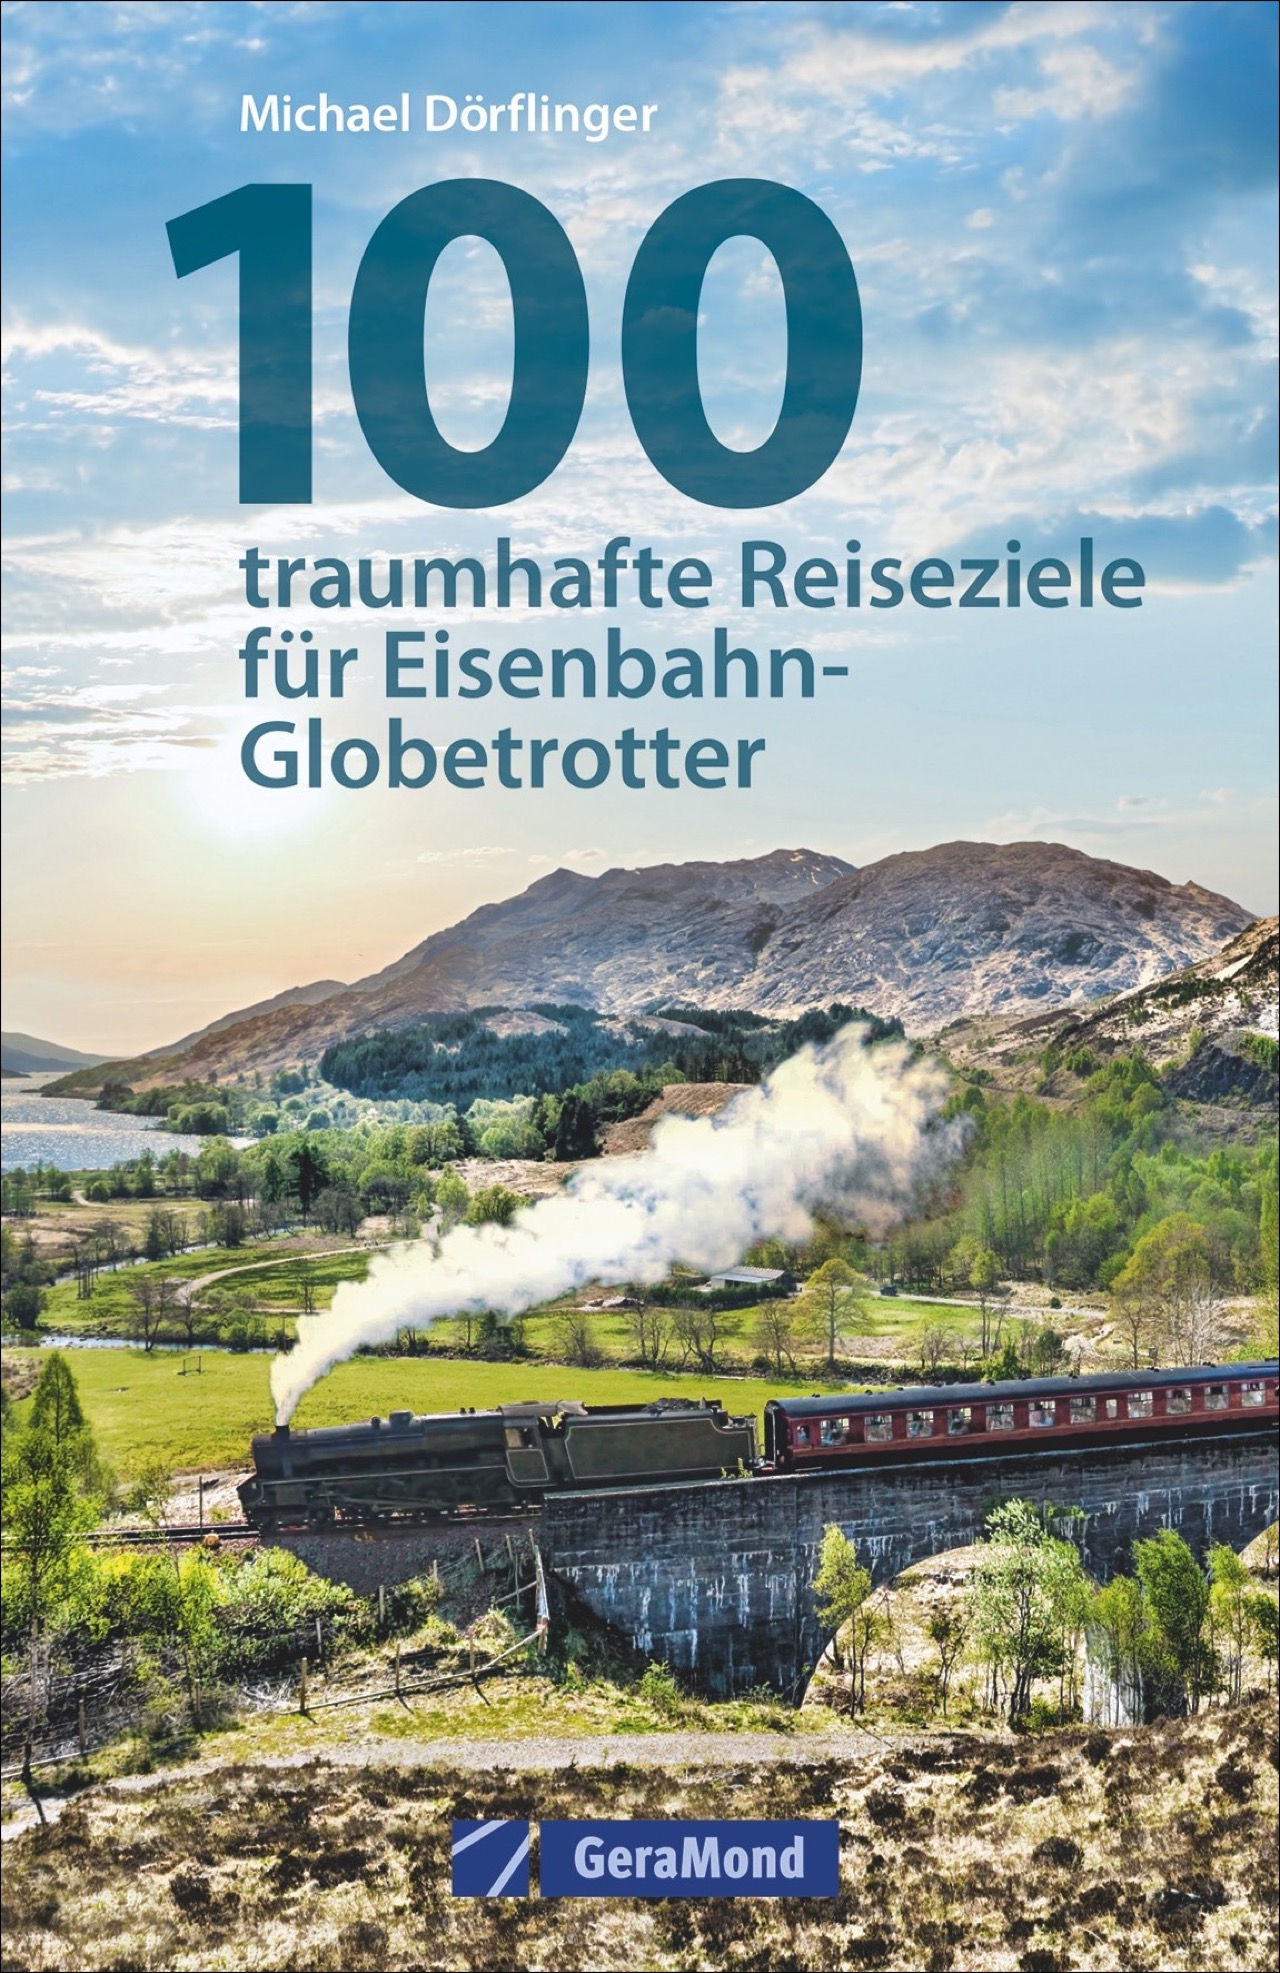 100 traumhafte Reiseziele für Eisenbahn-Globetrotter